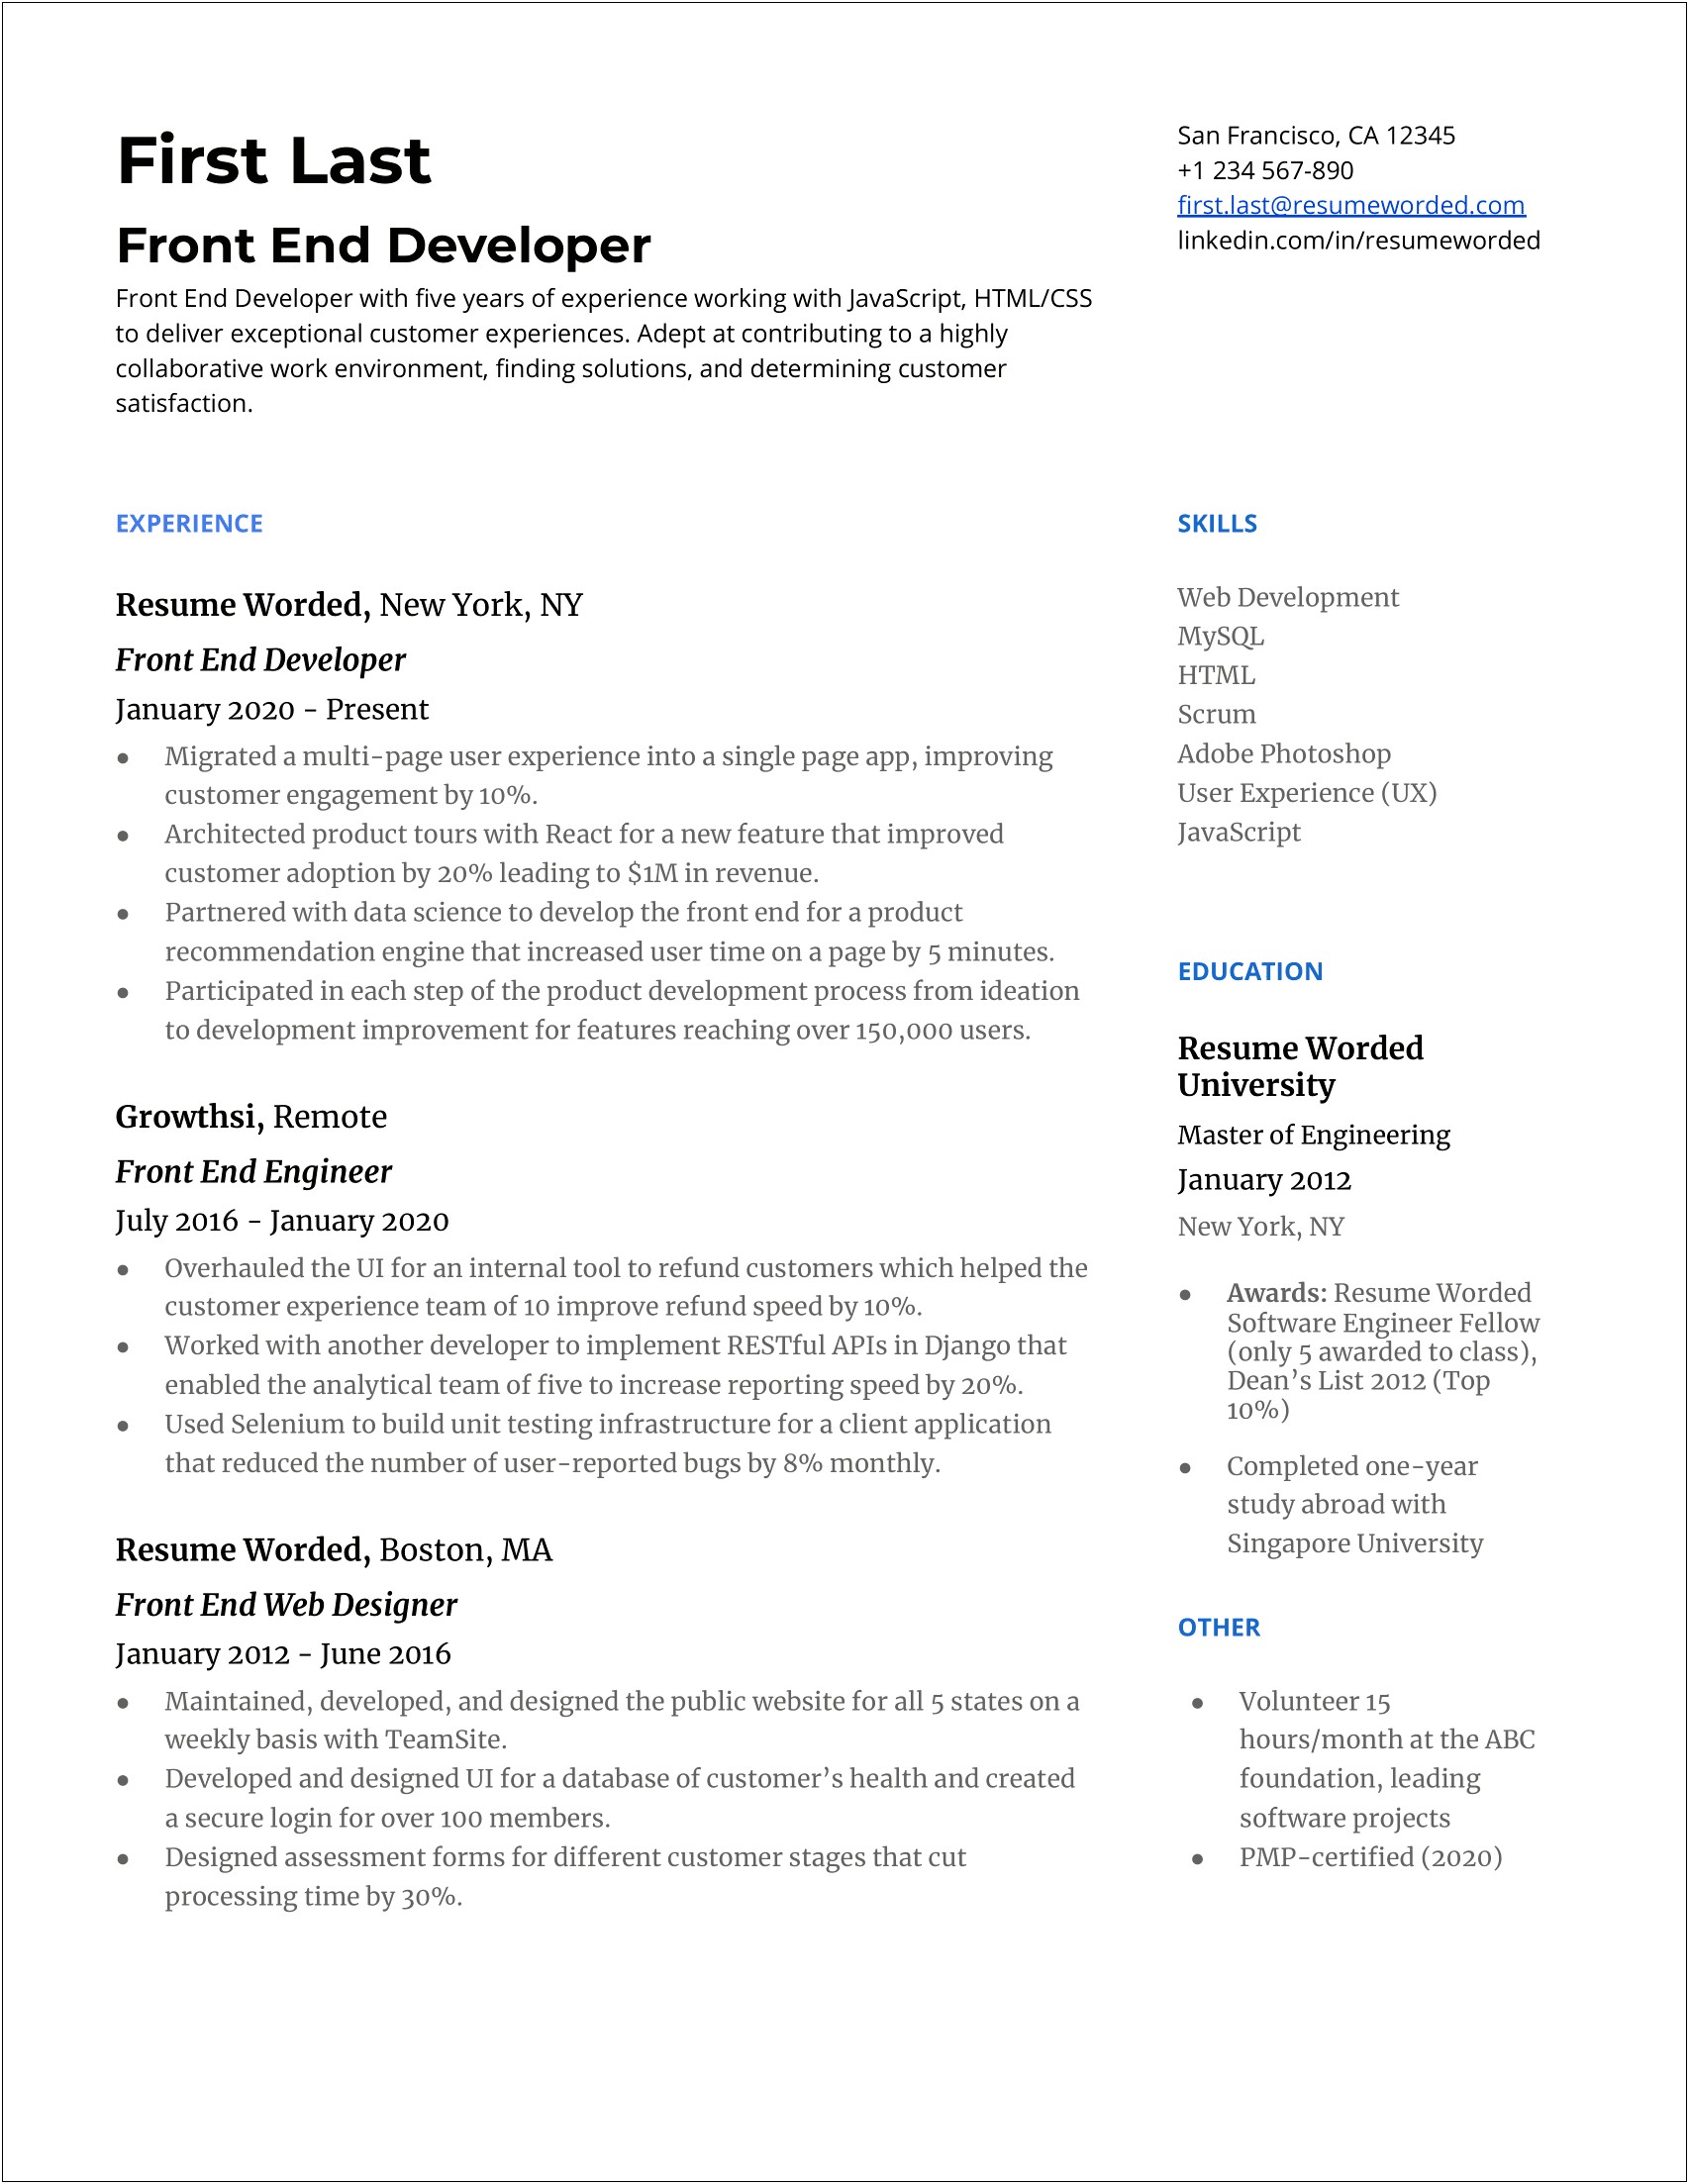 Front End Developer Job Description Resume